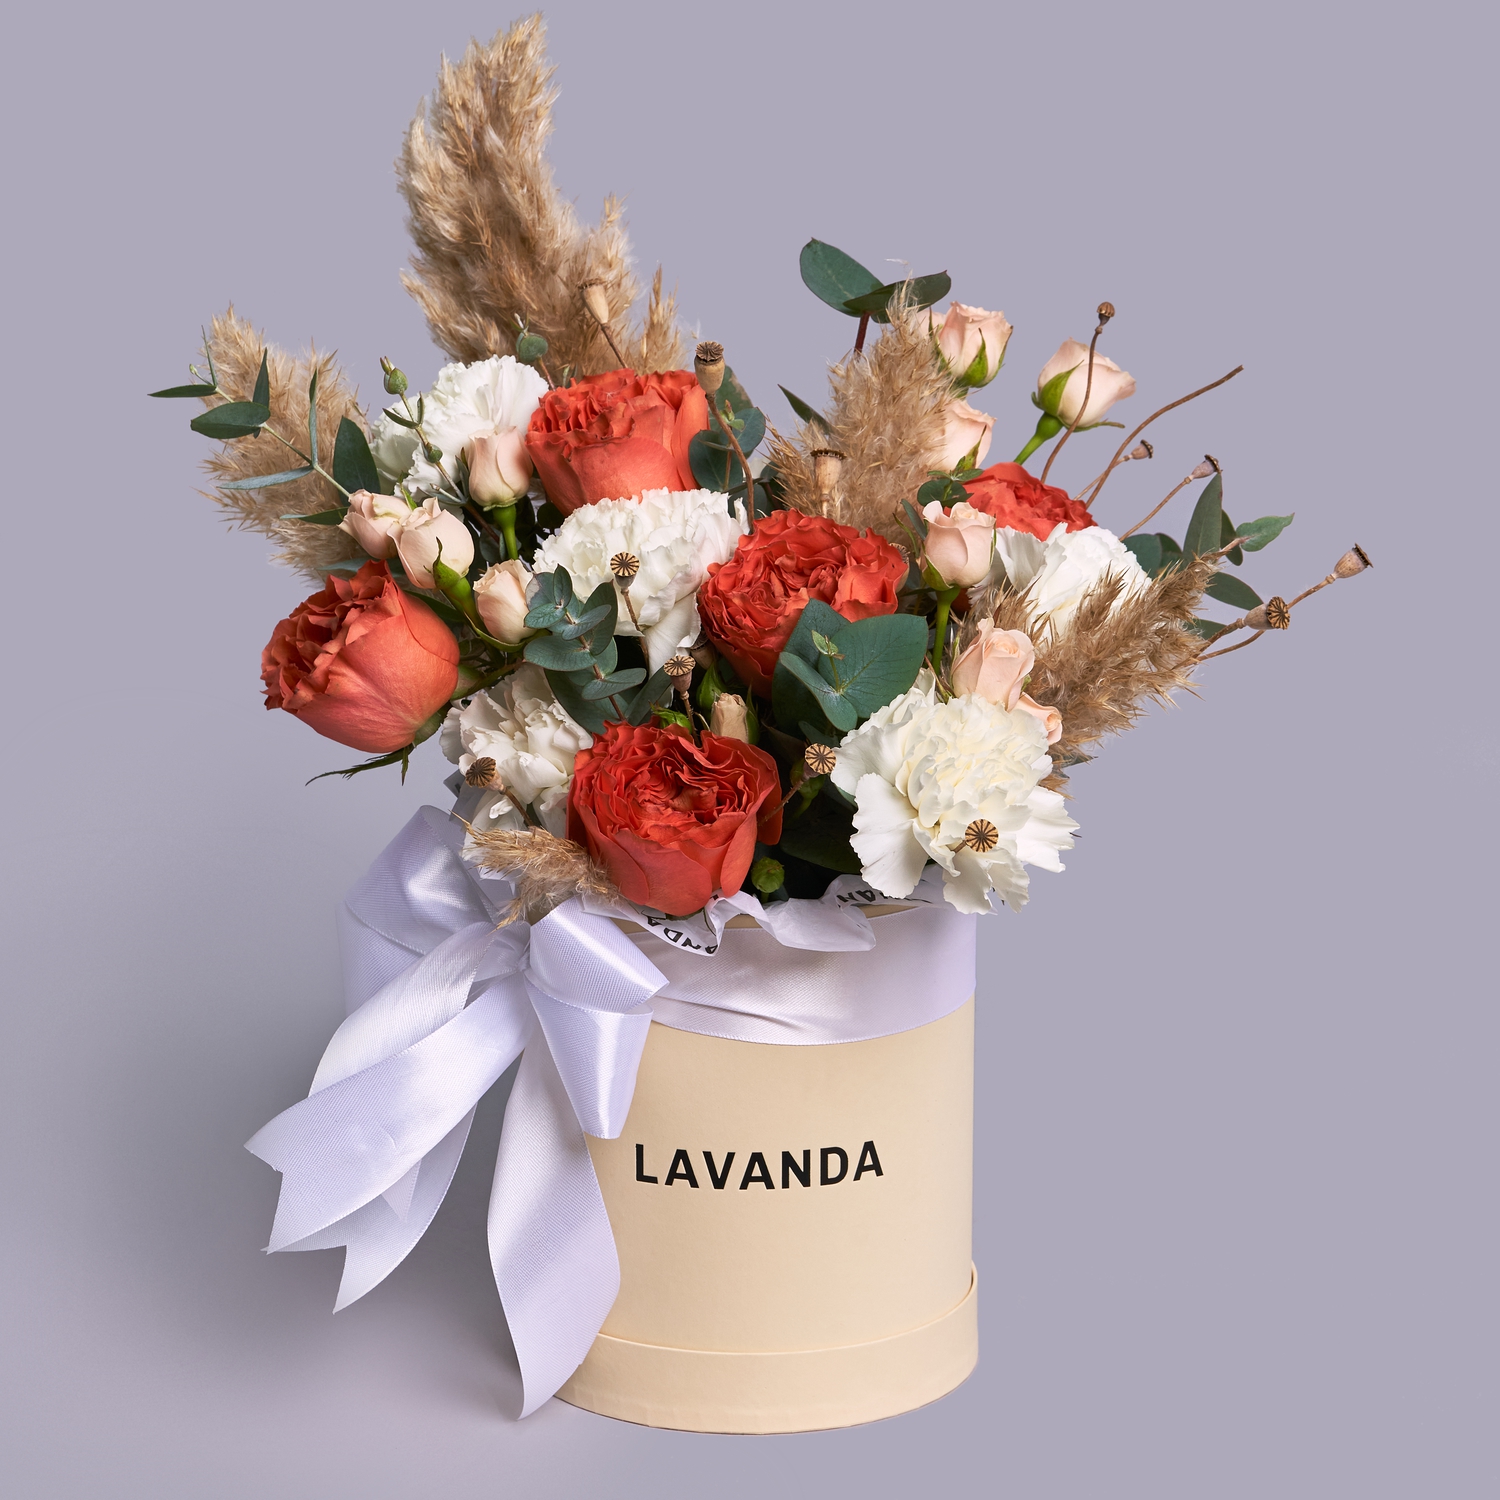 Кремовая коробочка пионовидных роз, диантусов и сухоцветов